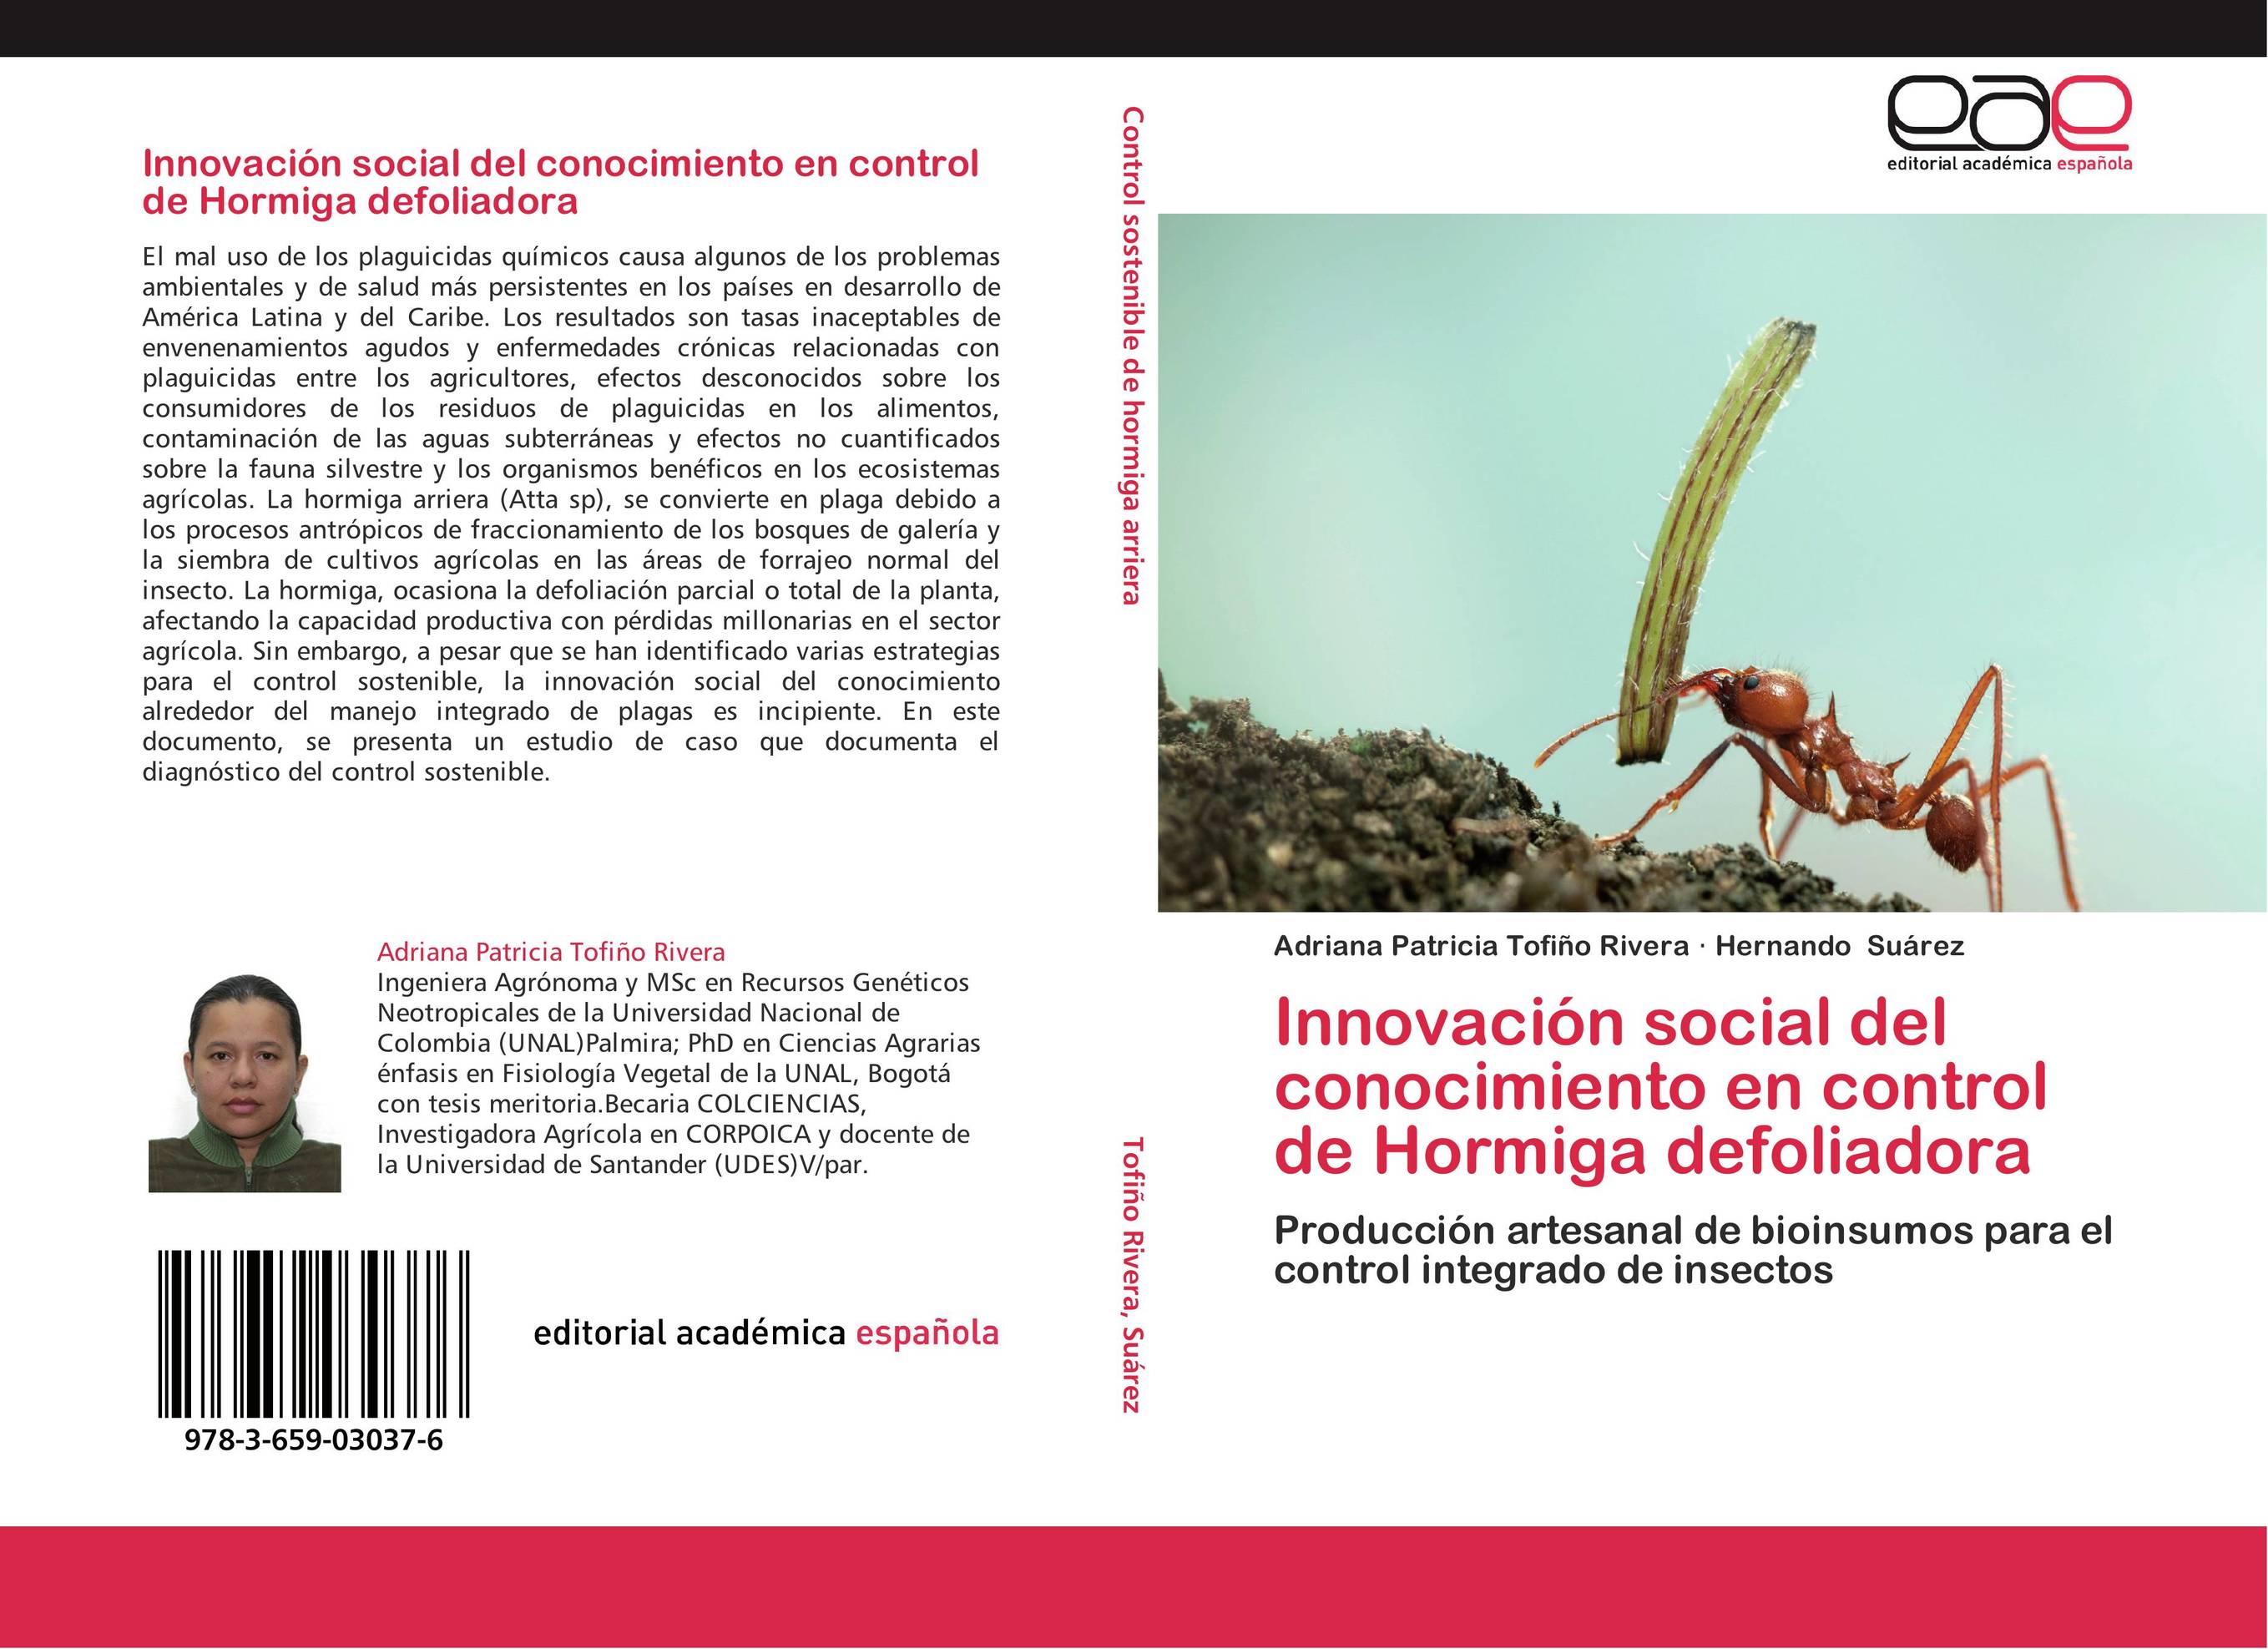 Innovación social del conocimiento en control de Hormiga defoliadora